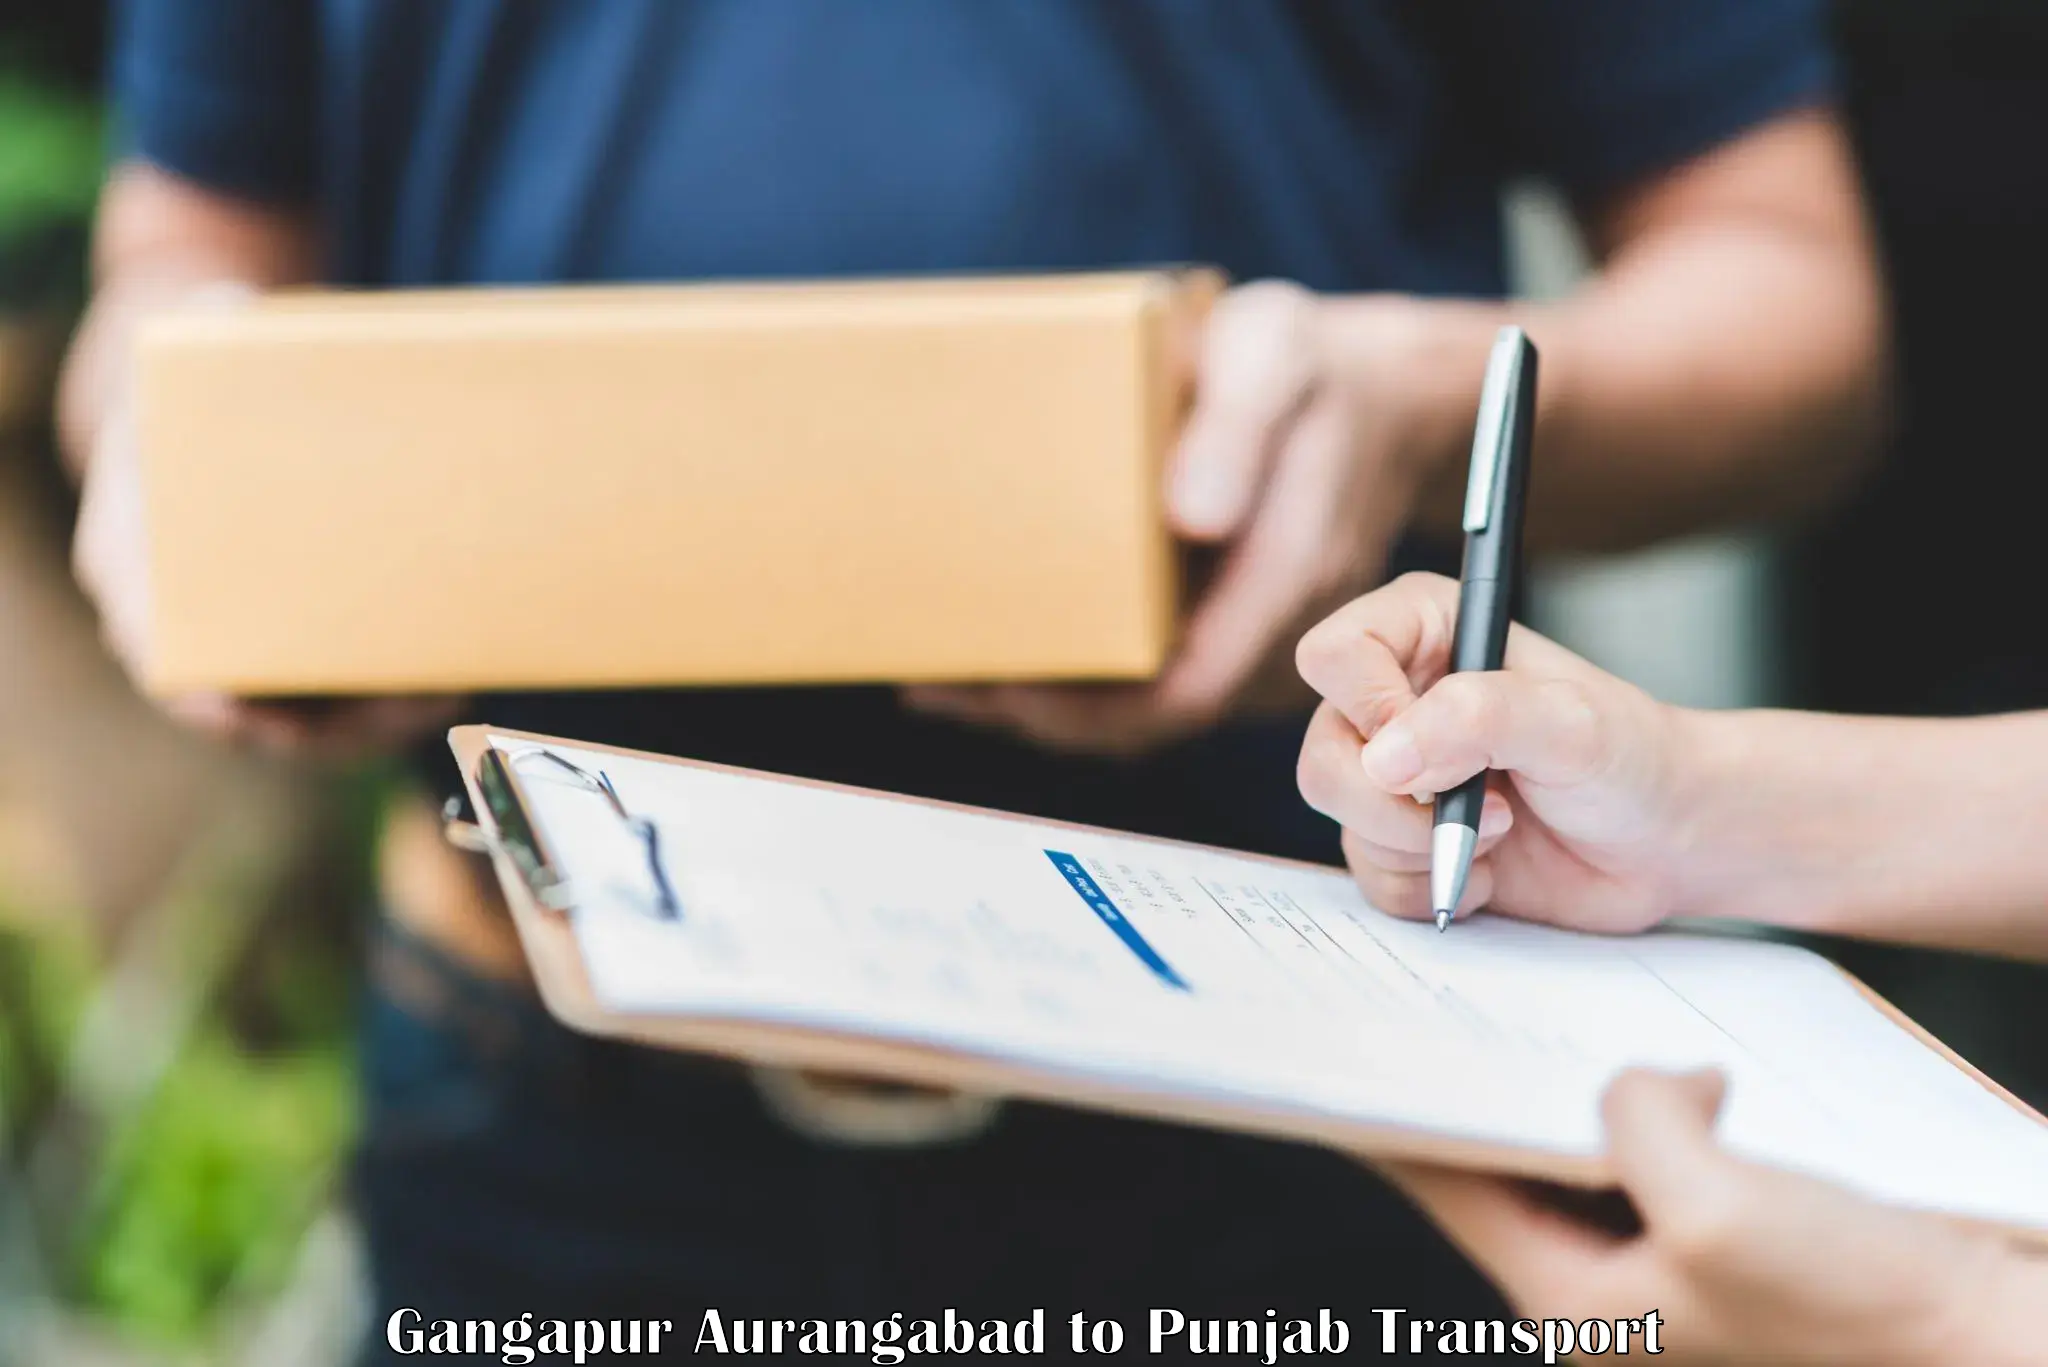 Cargo transportation services Gangapur Aurangabad to Central University of Punjab Bathinda